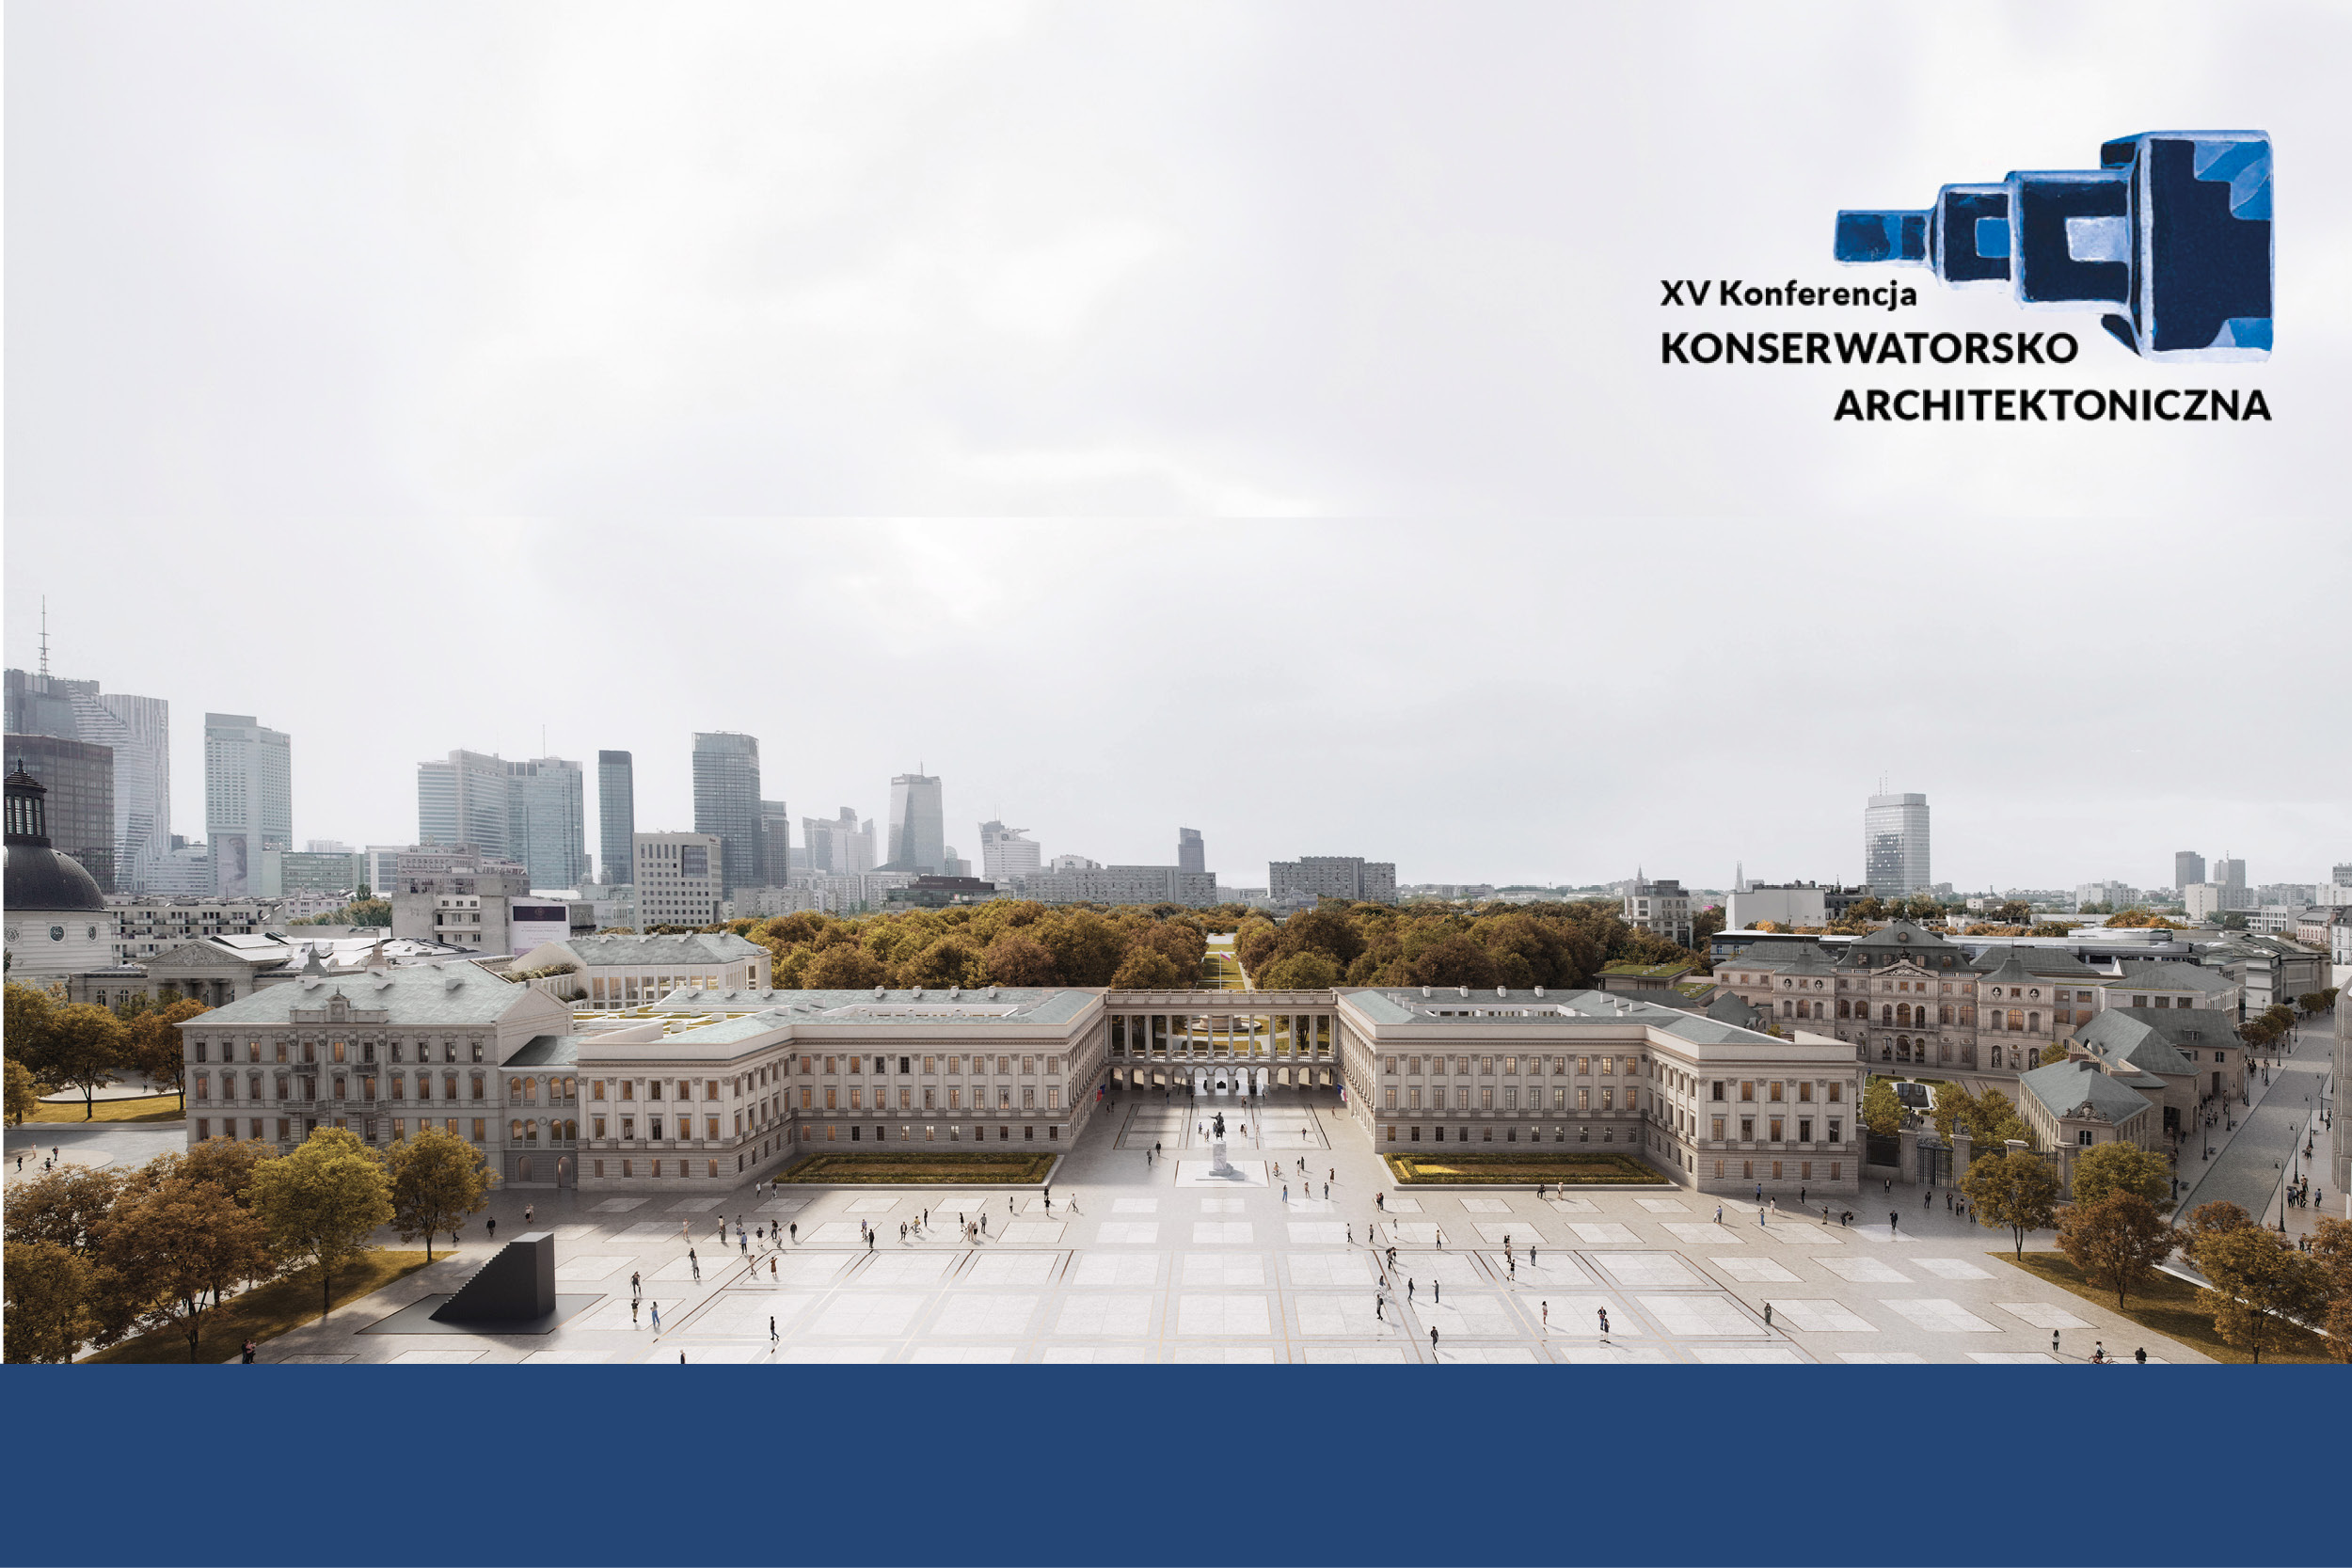 Wizualizacja odbudowanej pierzei zachodniej placu Piłsudskiego w Warszawie. Widok sponad placu, w tle budynków na granicy placu rysują się drzewa Ogrodu Saskiego i współczesne wieżowce. W rogu logo konferencji Między ortodoksją a kreacją.